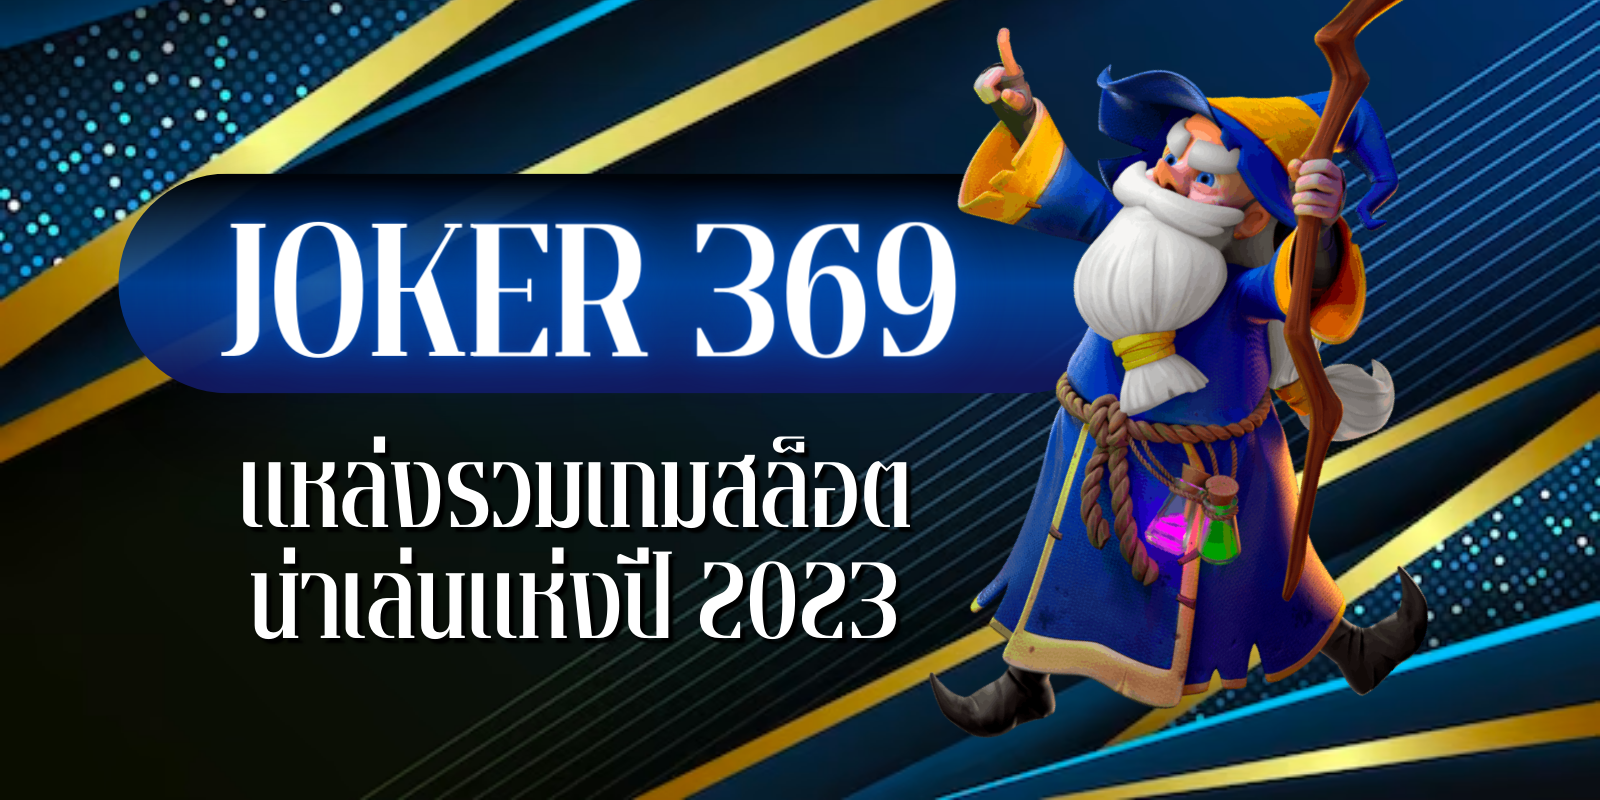 joker 369 แหล่งรวมเกมสล็อตน่าเล่นแห่งปี2023